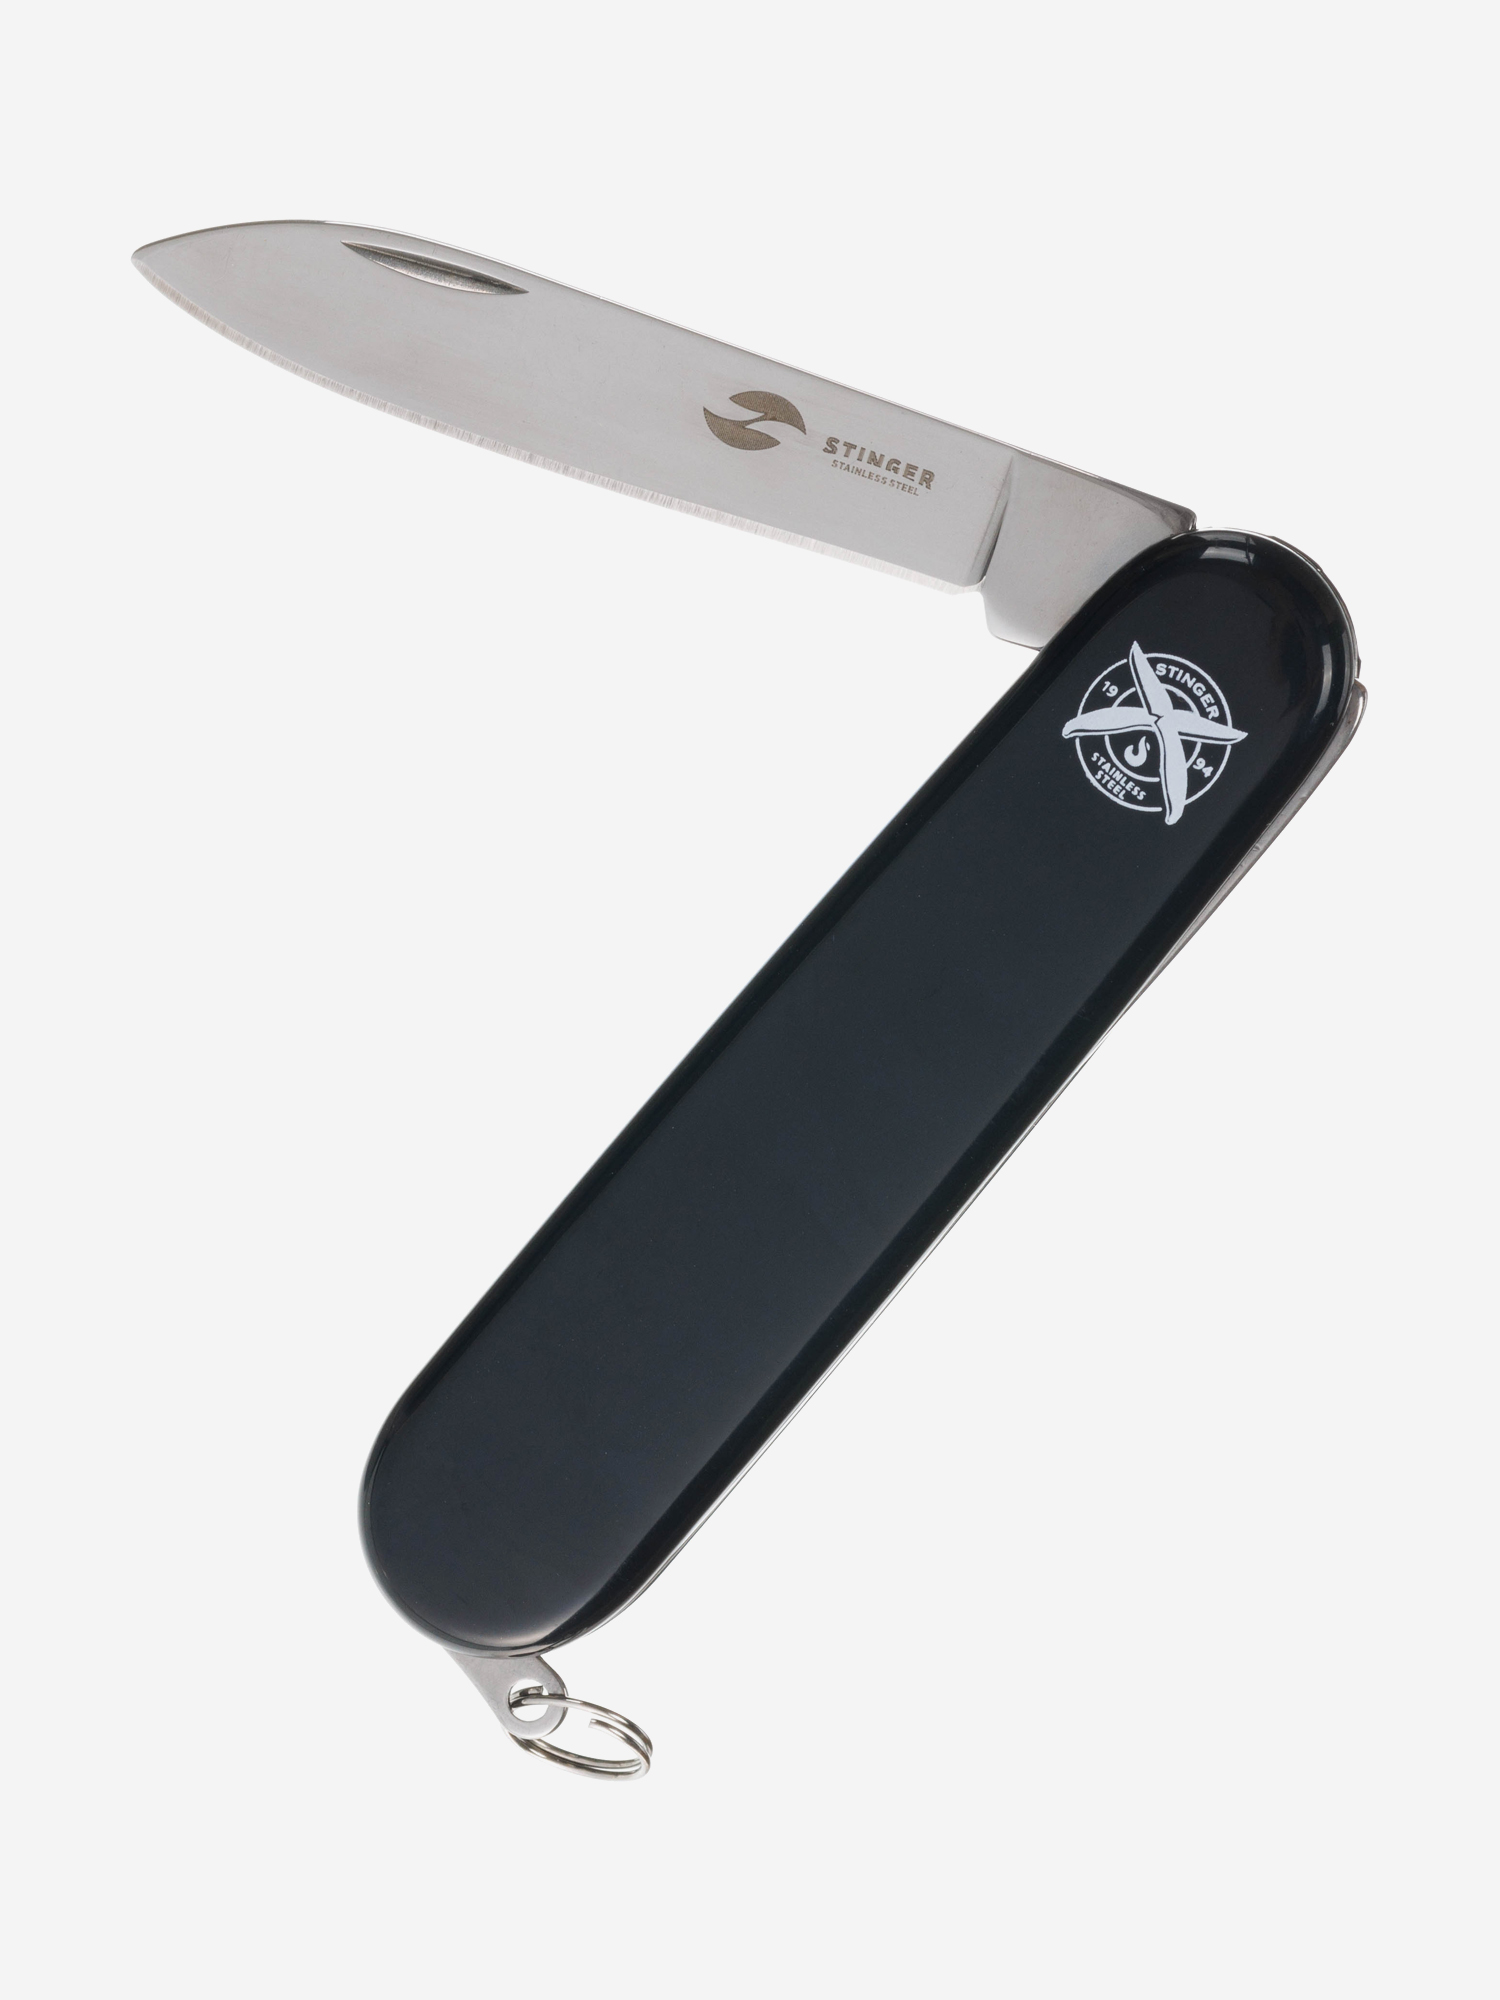 Нож перочинный Stinger, 90 мм, 2 функции, материал рукояти: АБС-пластик (черный), Черный термокружка stinger 0 42 л сталь пластик синий глянцевый 7 5 х 6 9 х 22 2 см синий